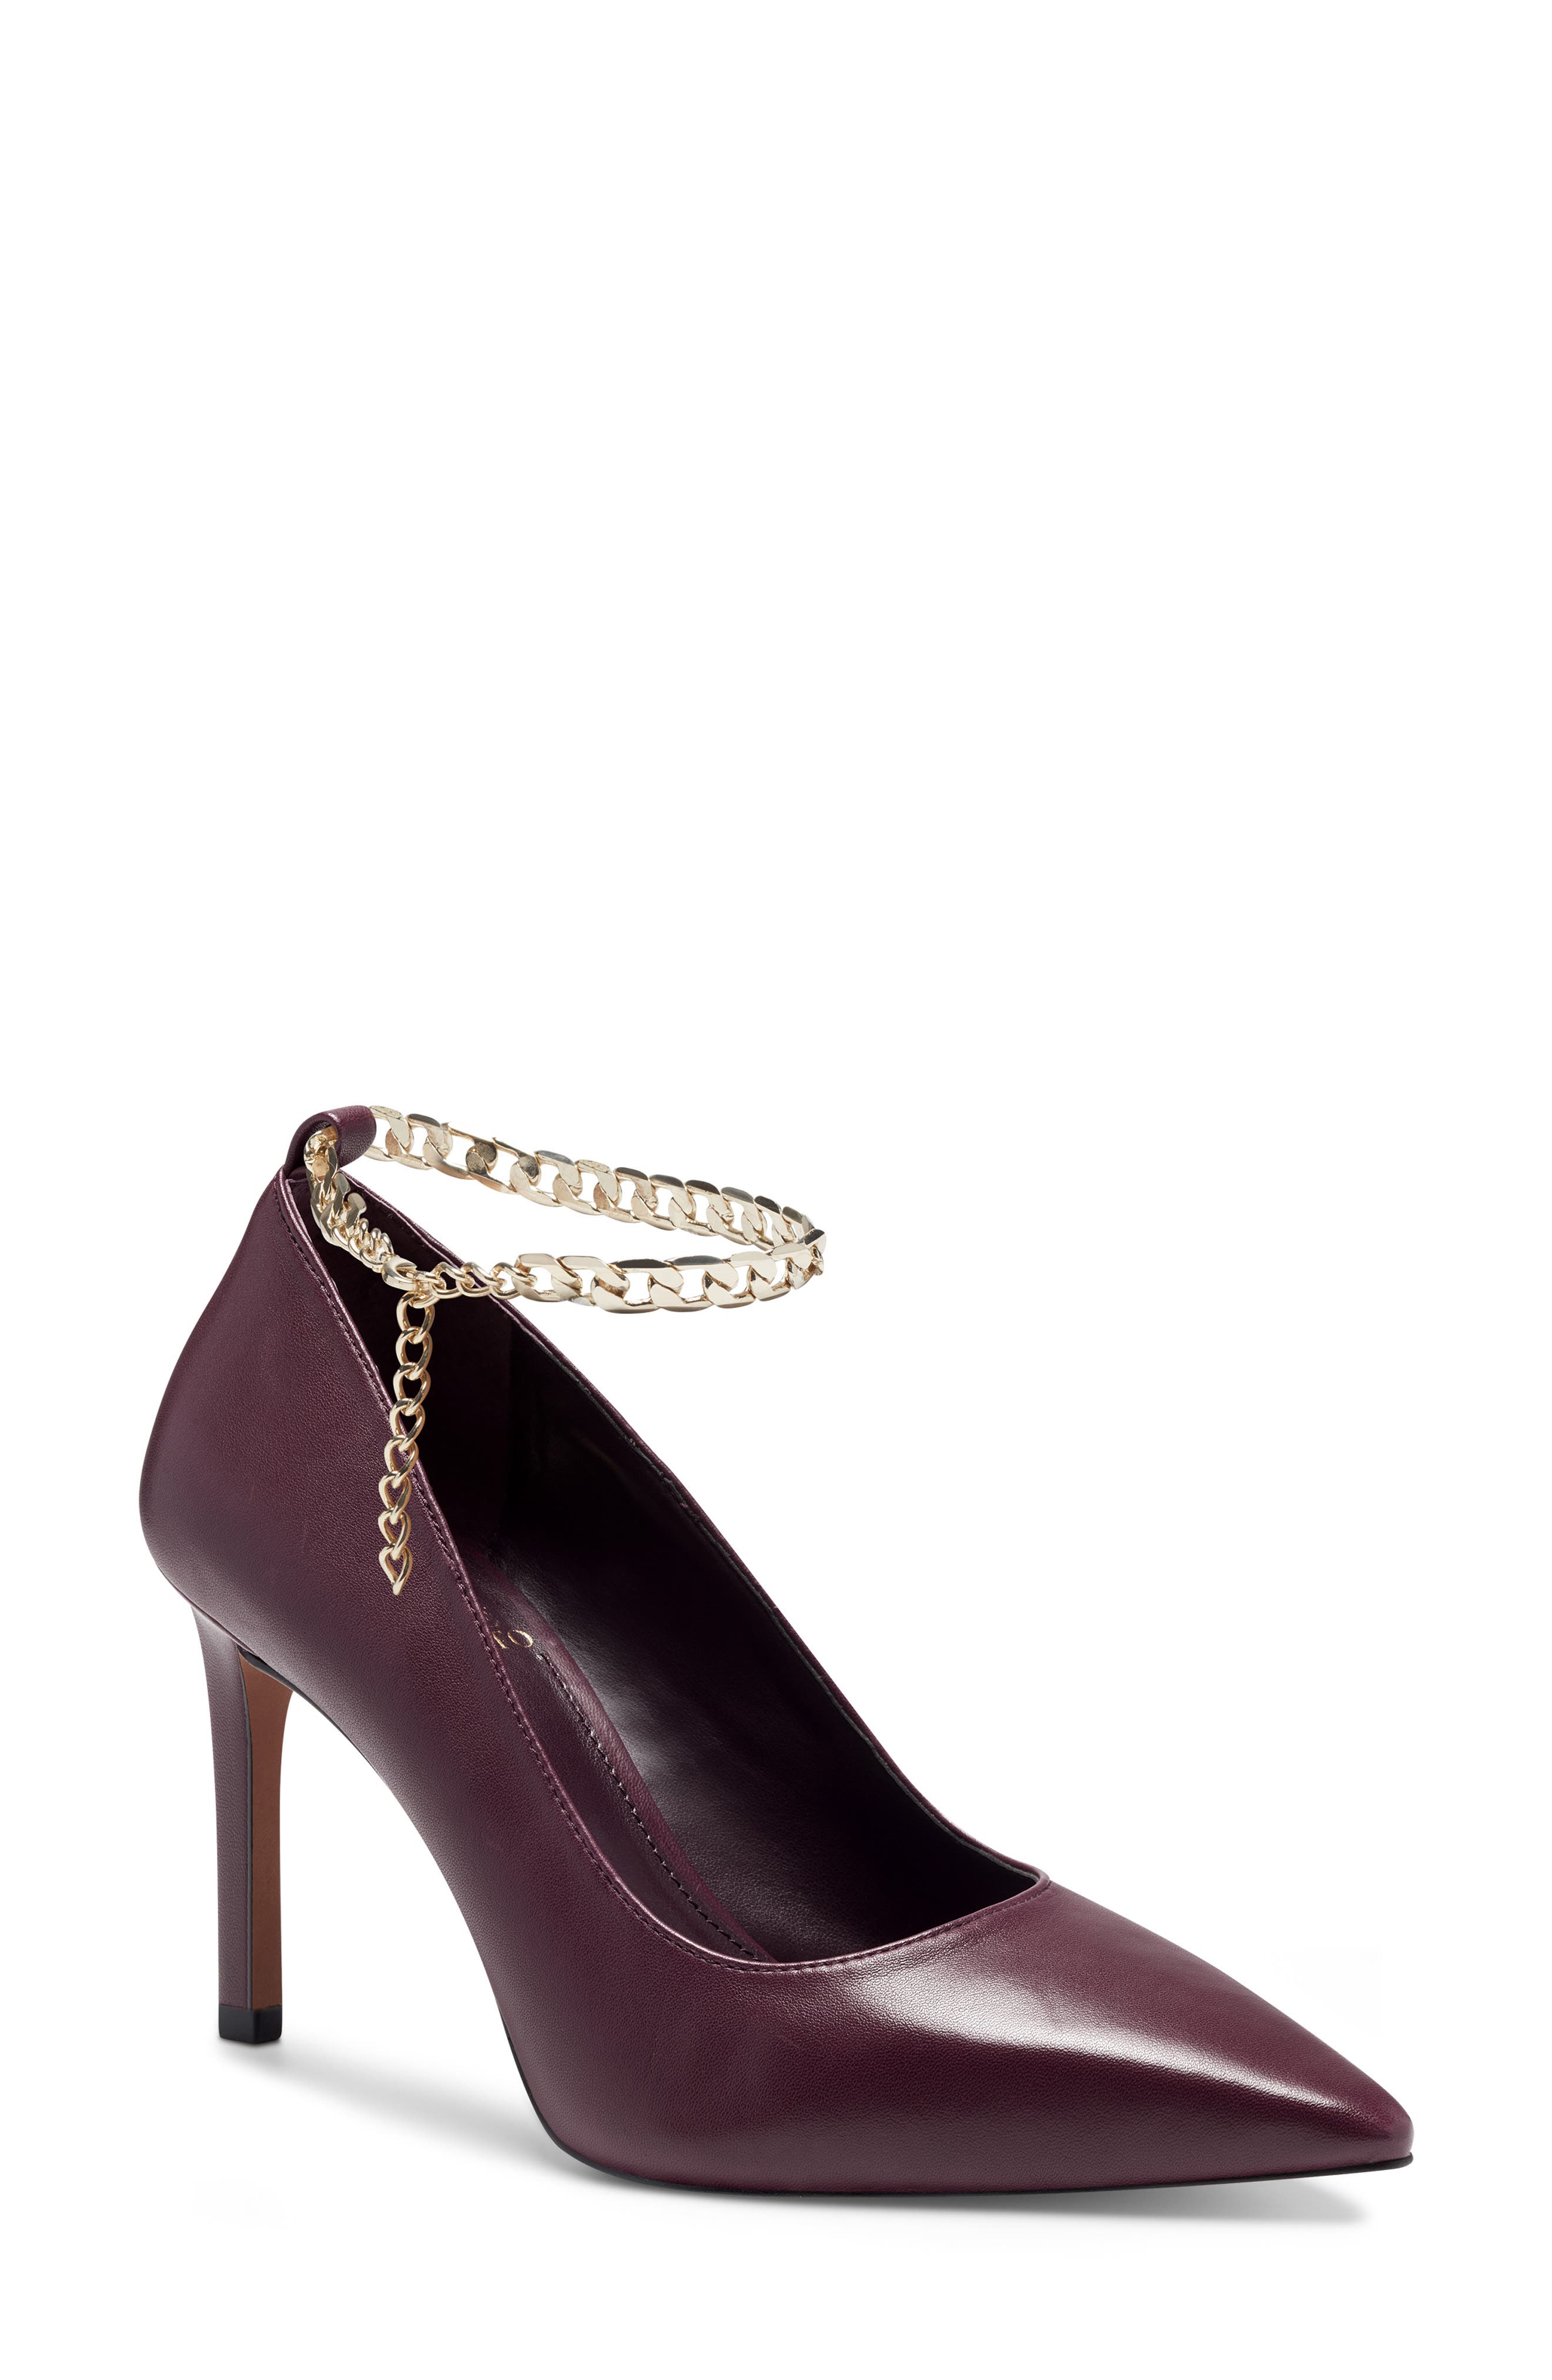 purple heels near me